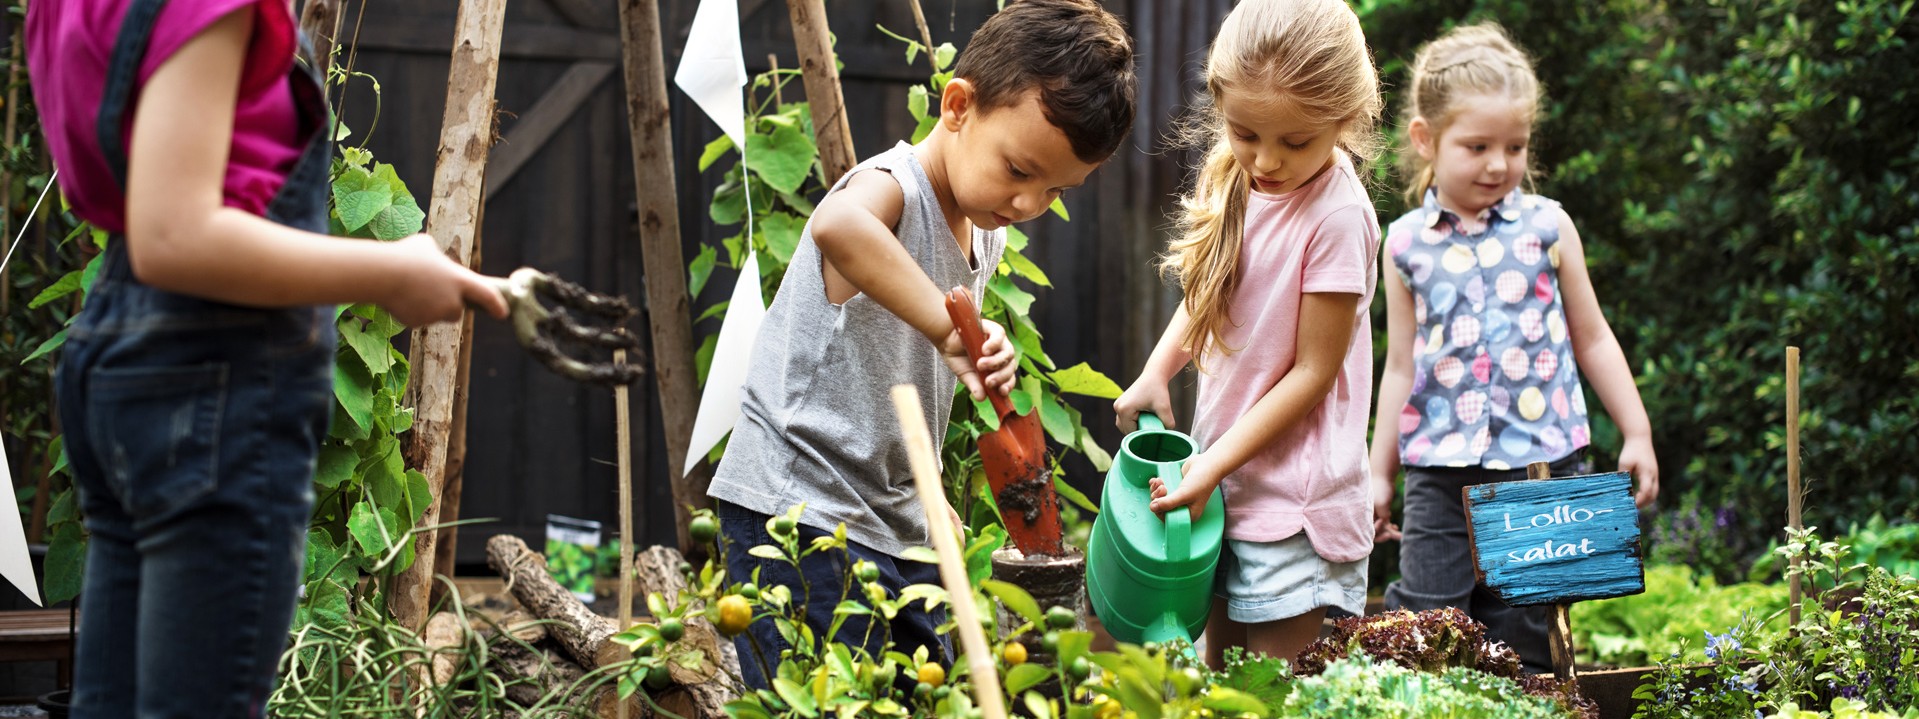 Kinder bei der Gartenarbeit an einem Hochbeet.